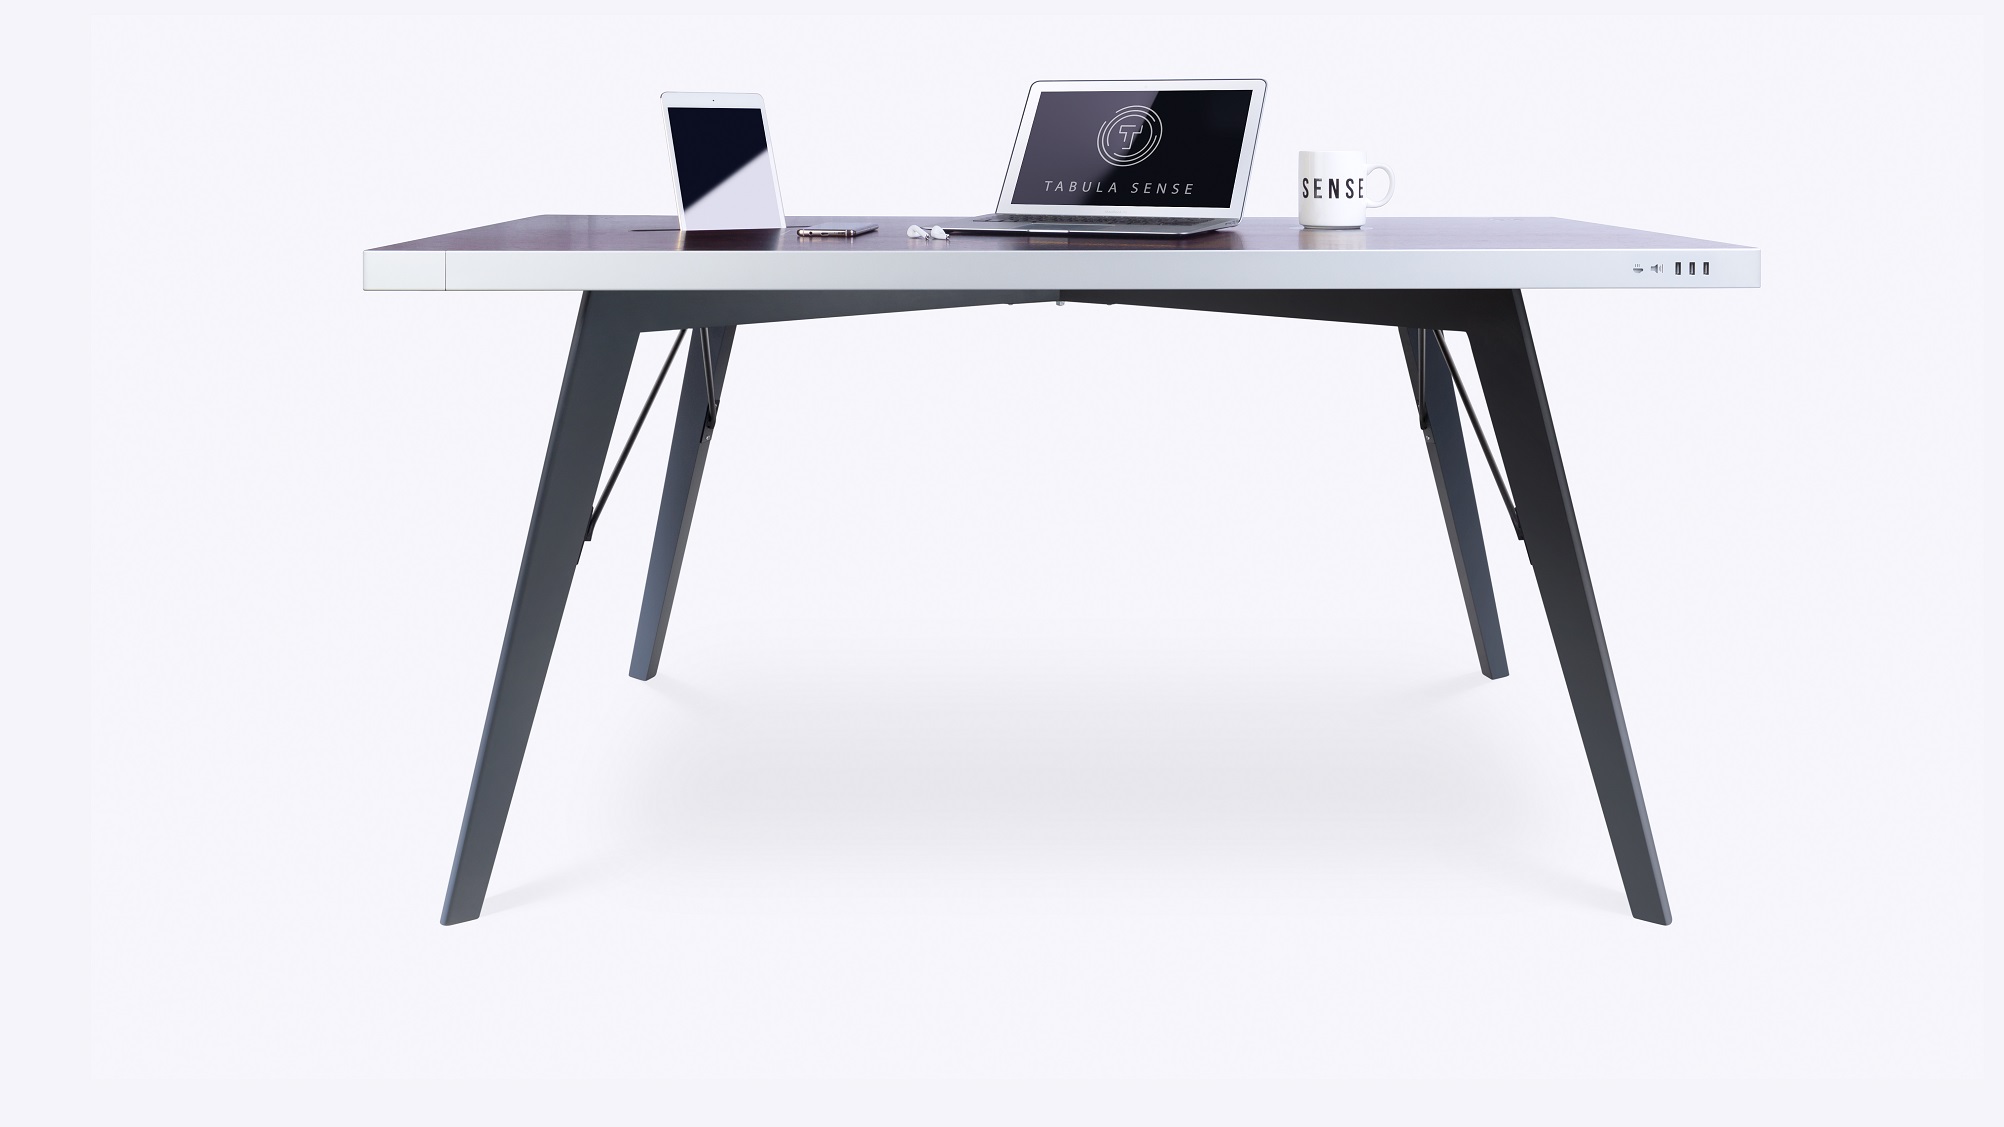  tabula sense smart desk 